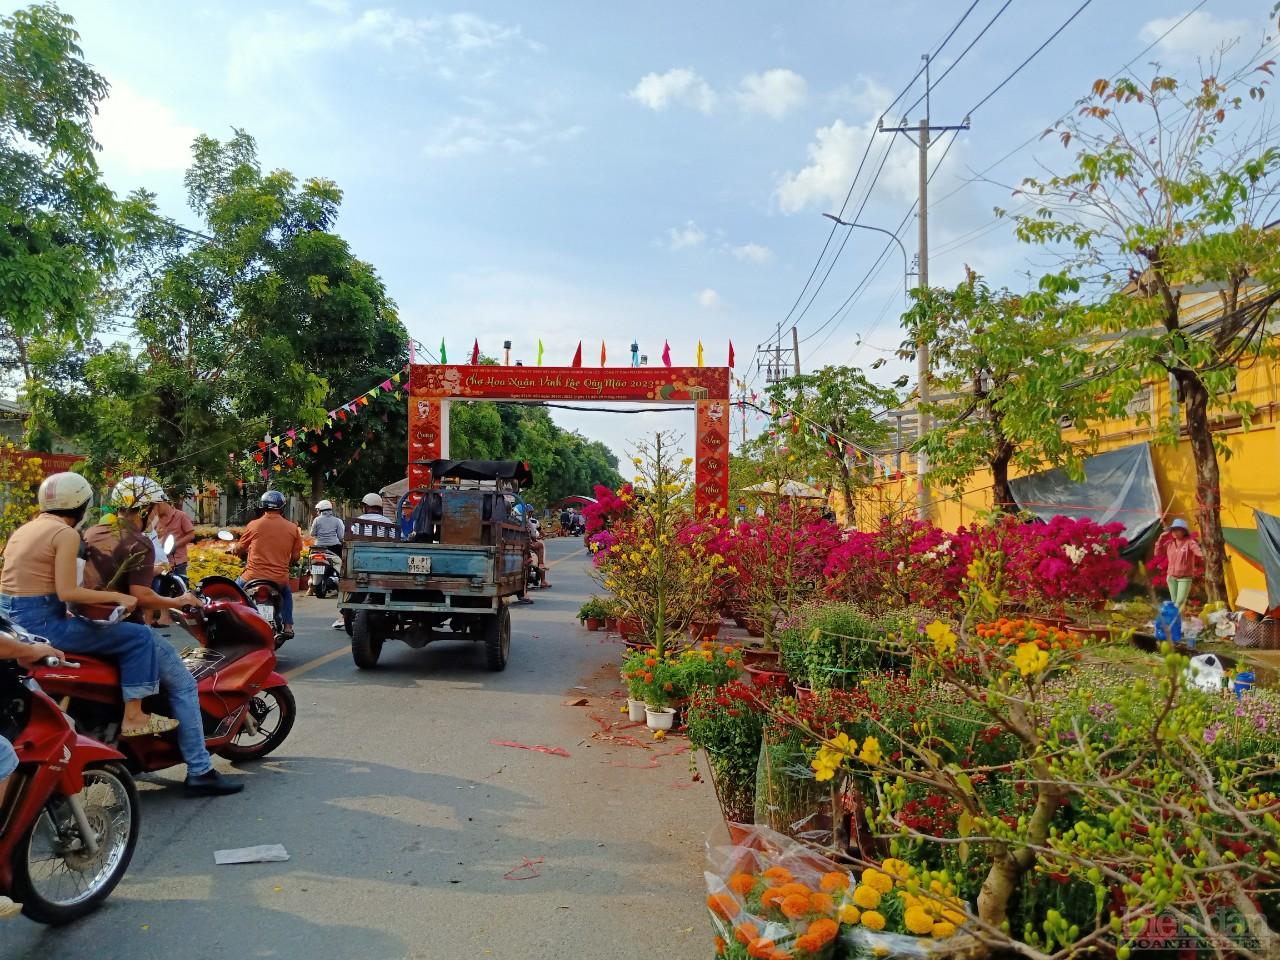 Hơn 16 giờ lượng hoa cảnh tại chợ hoa Xuân trong KCN Vĩnh Lộc, huyện Bình Chánh, TP.HCM vẫn còn rất nhiều.